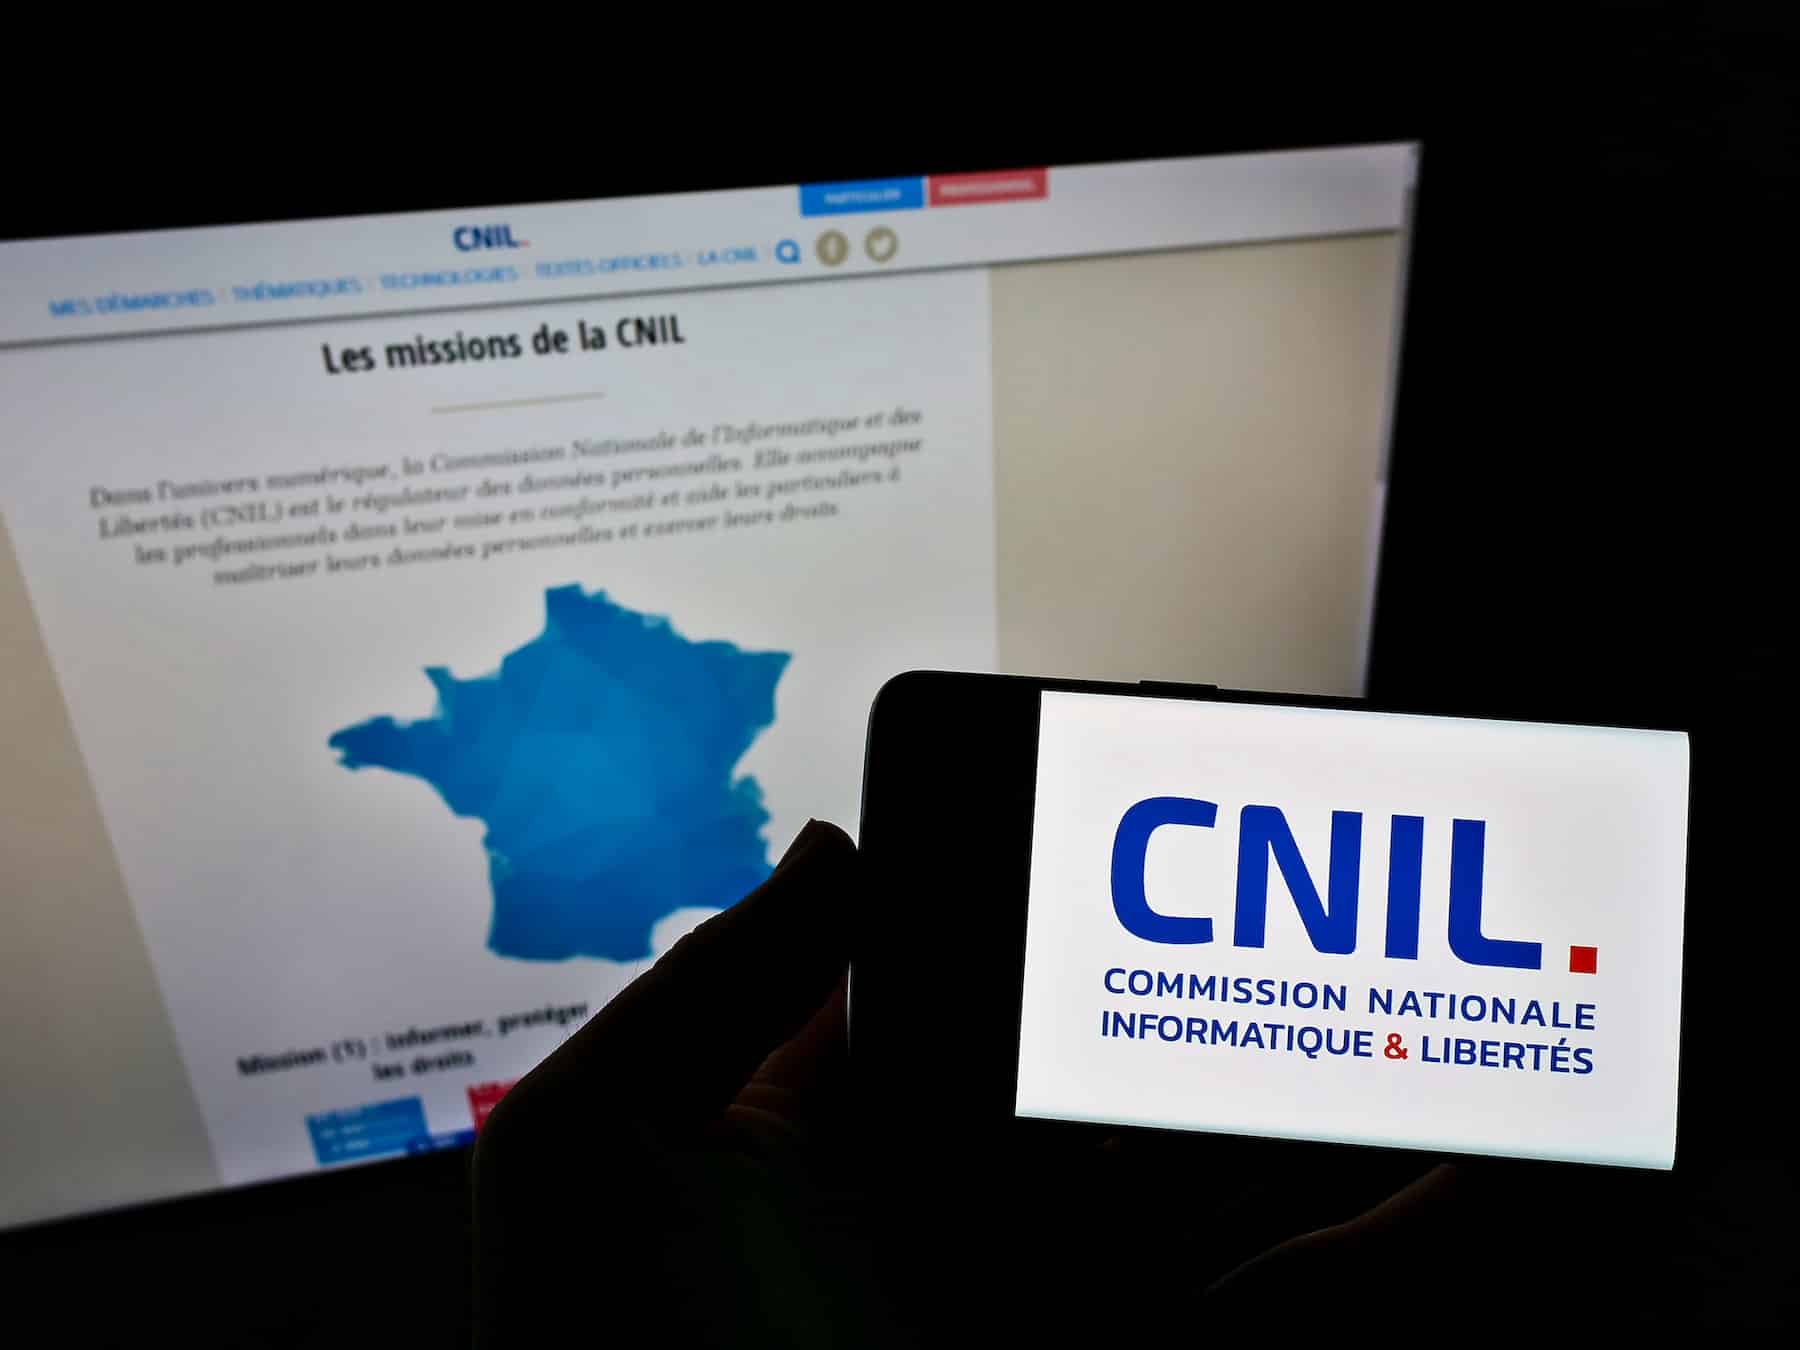 scnil who recommand francia reglementation